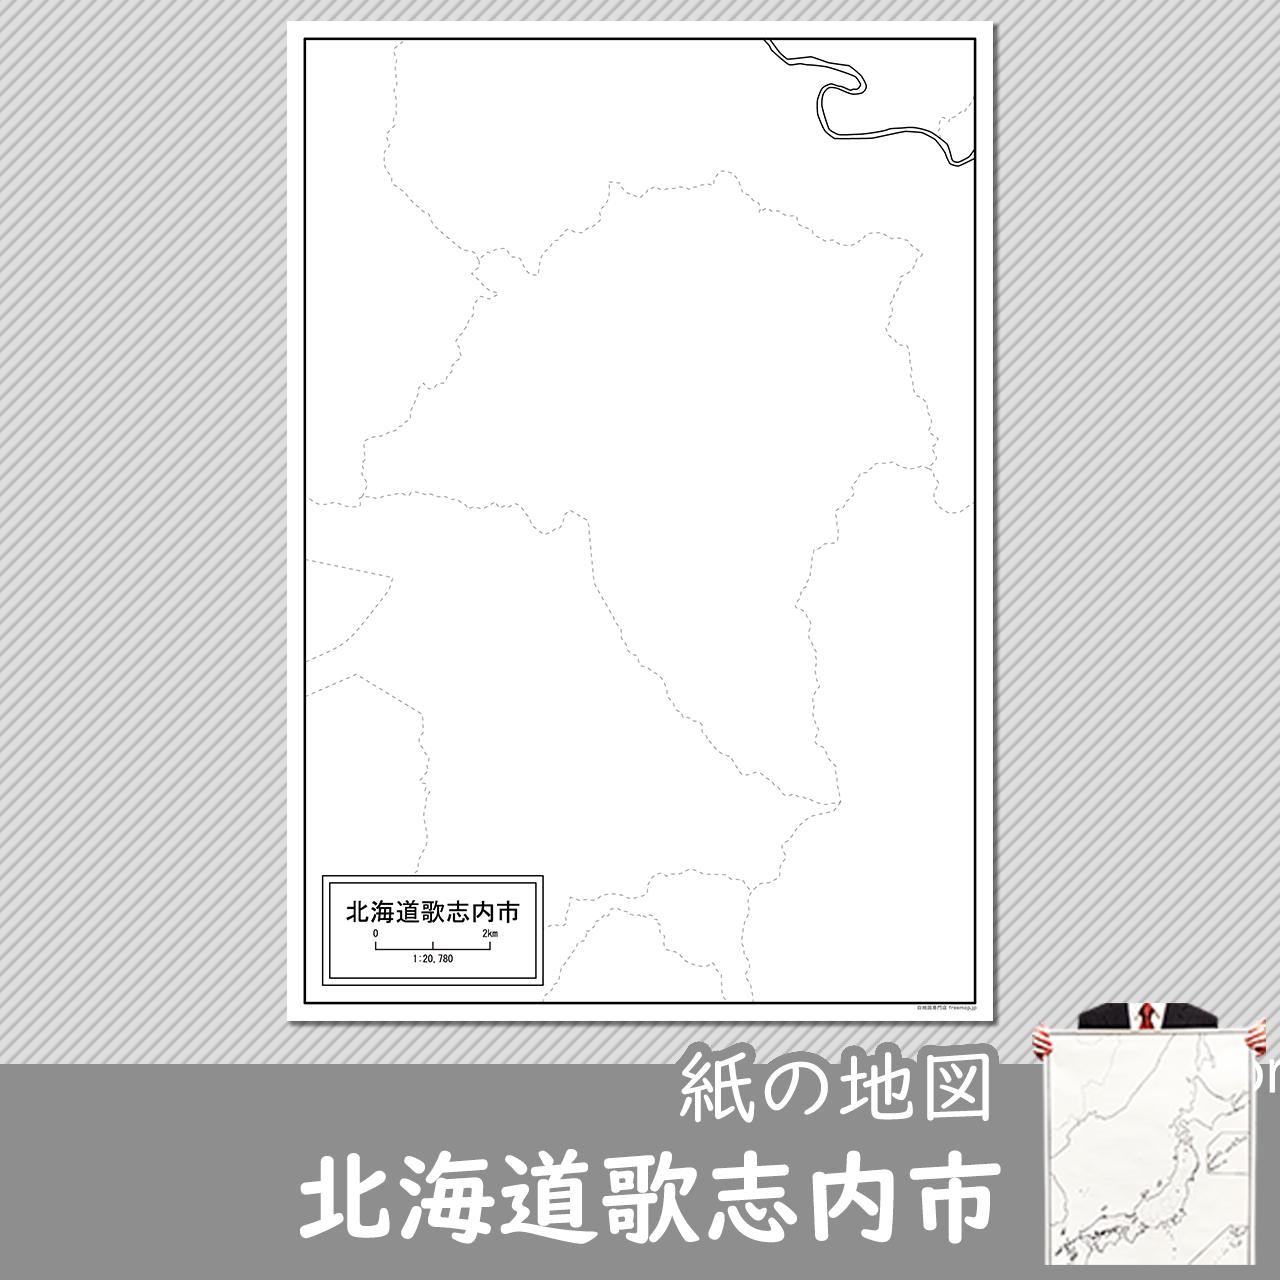 歌志内市の紙の白地図のサムネイル